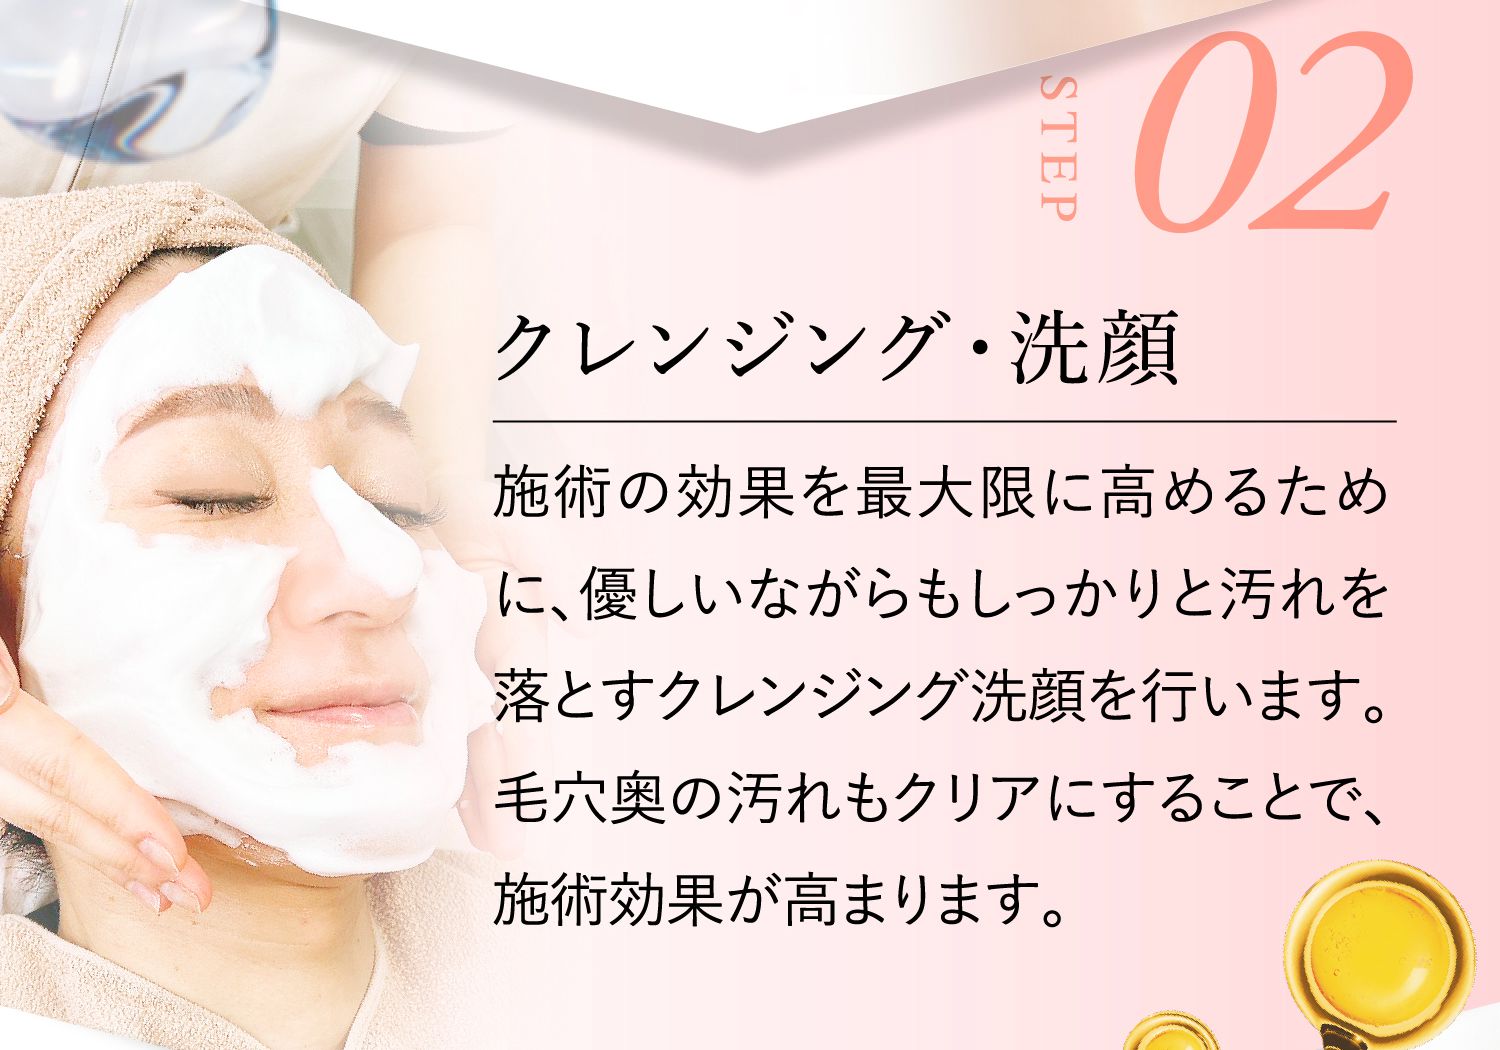 STEP02:クレンジング・洗顔 施術の効果を最大限に高めるために、優しいながらもしっかりと汚れを落とすクレンジング洗顔を行います。毛穴奥の汚れもクリアにすることで、施術効果が高まります。